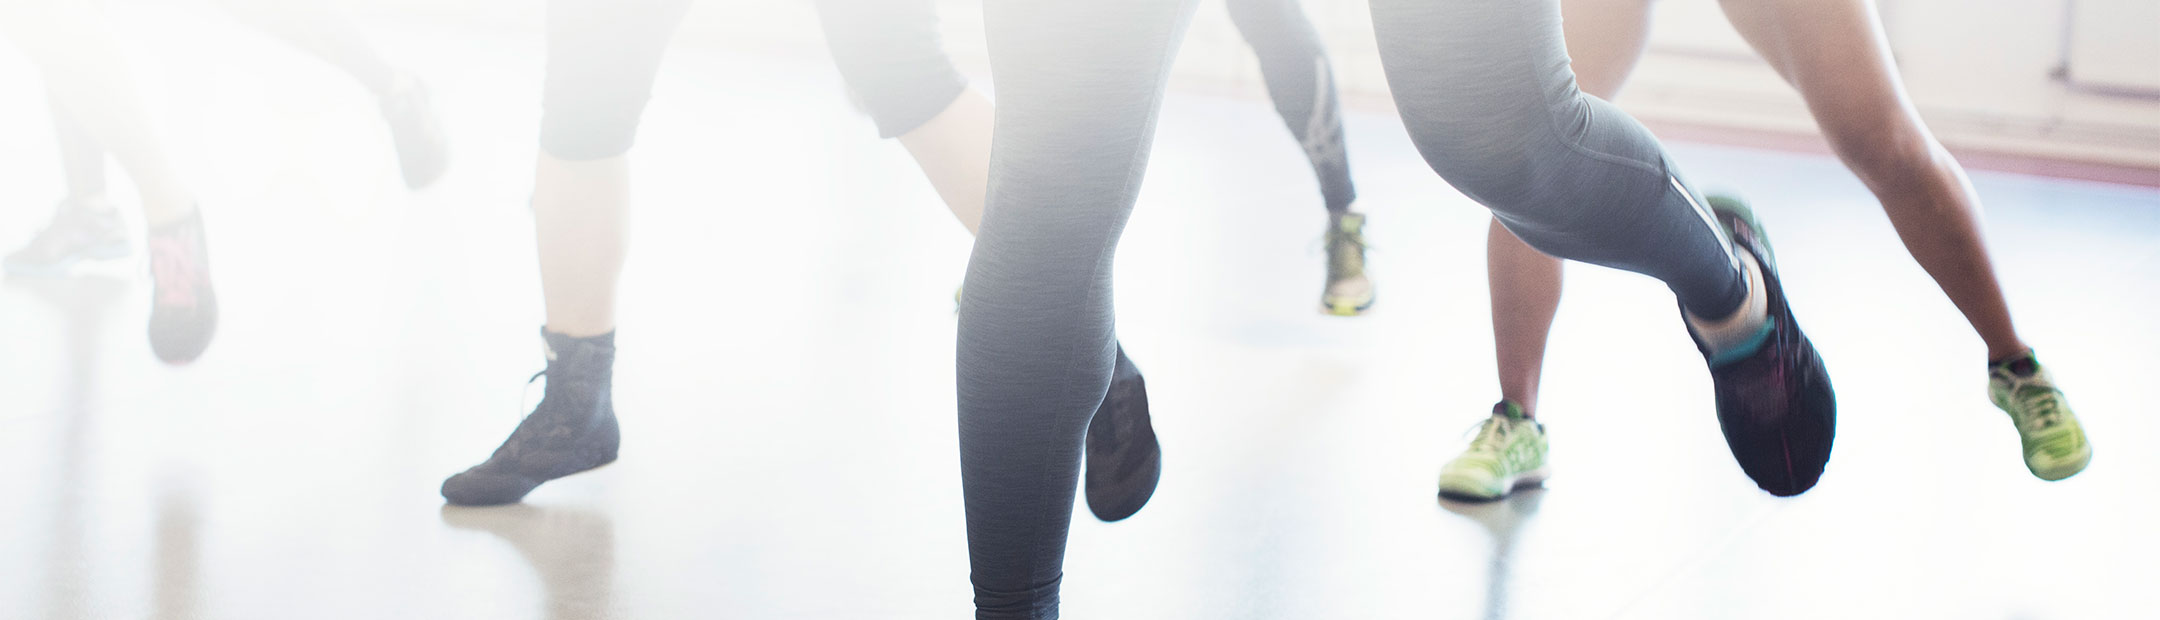 Närbild på en grupp träningsklädda människors fötter som är i rörelse i en träningssal på Friskis&Svettis.